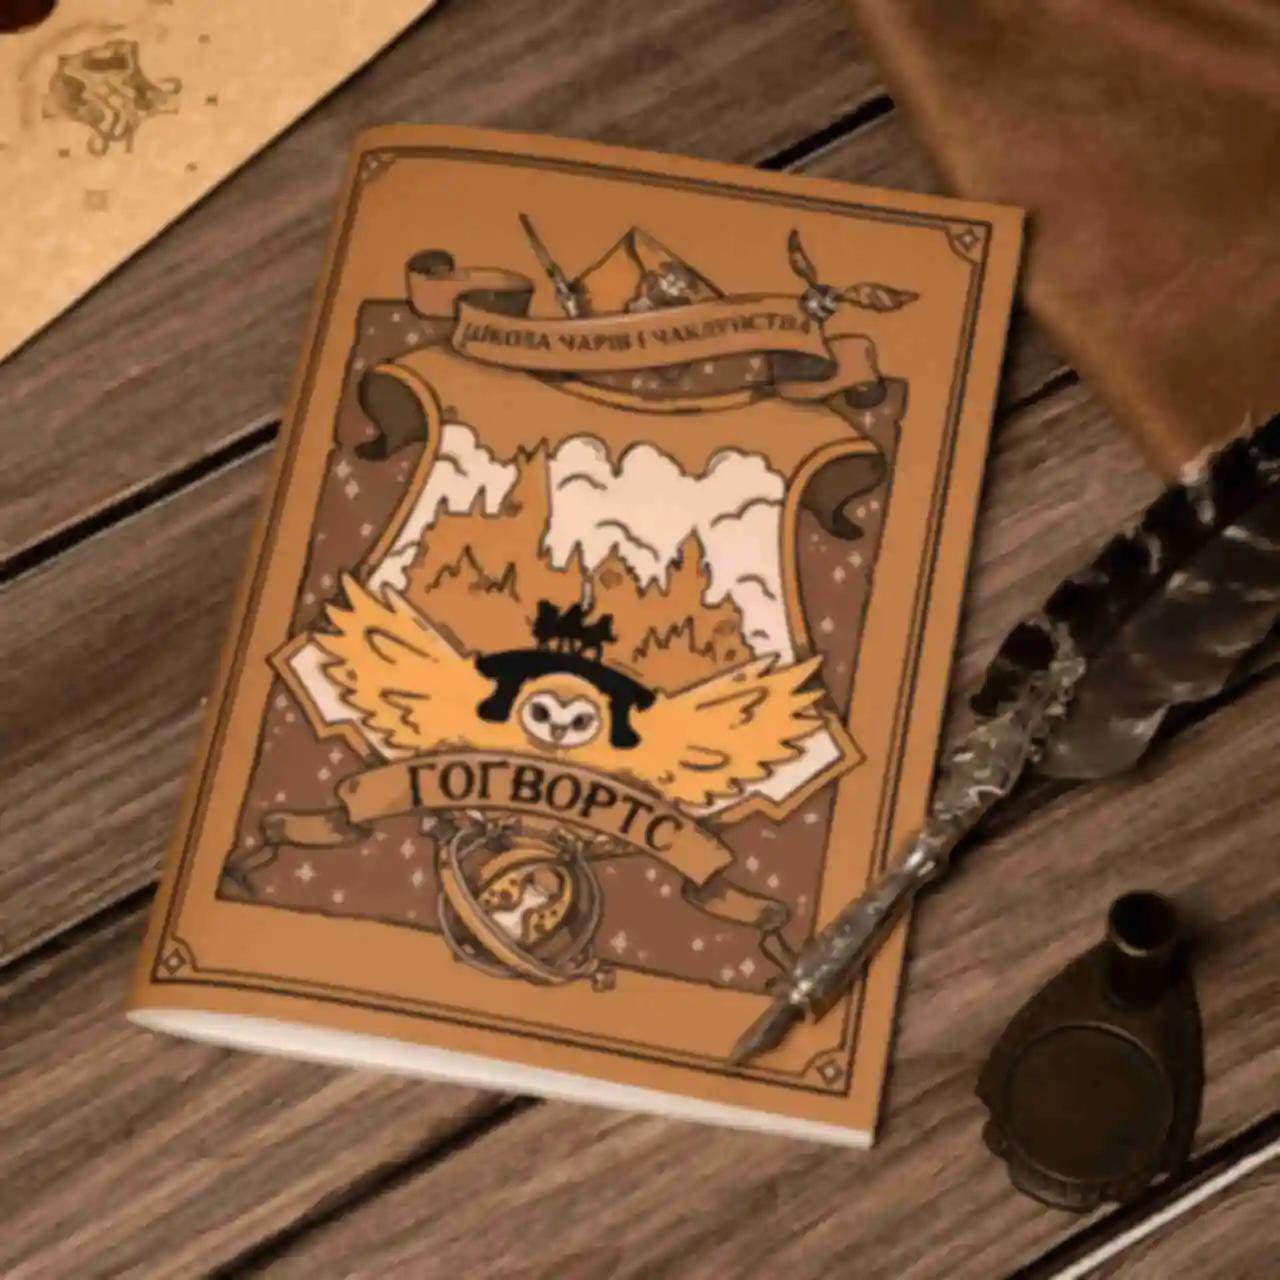 Зошит Гоґвортс ⚡️Hogwarts Copybook ⚡️ Блокнот Гаррі Поттер ⚡️ Harry Potter